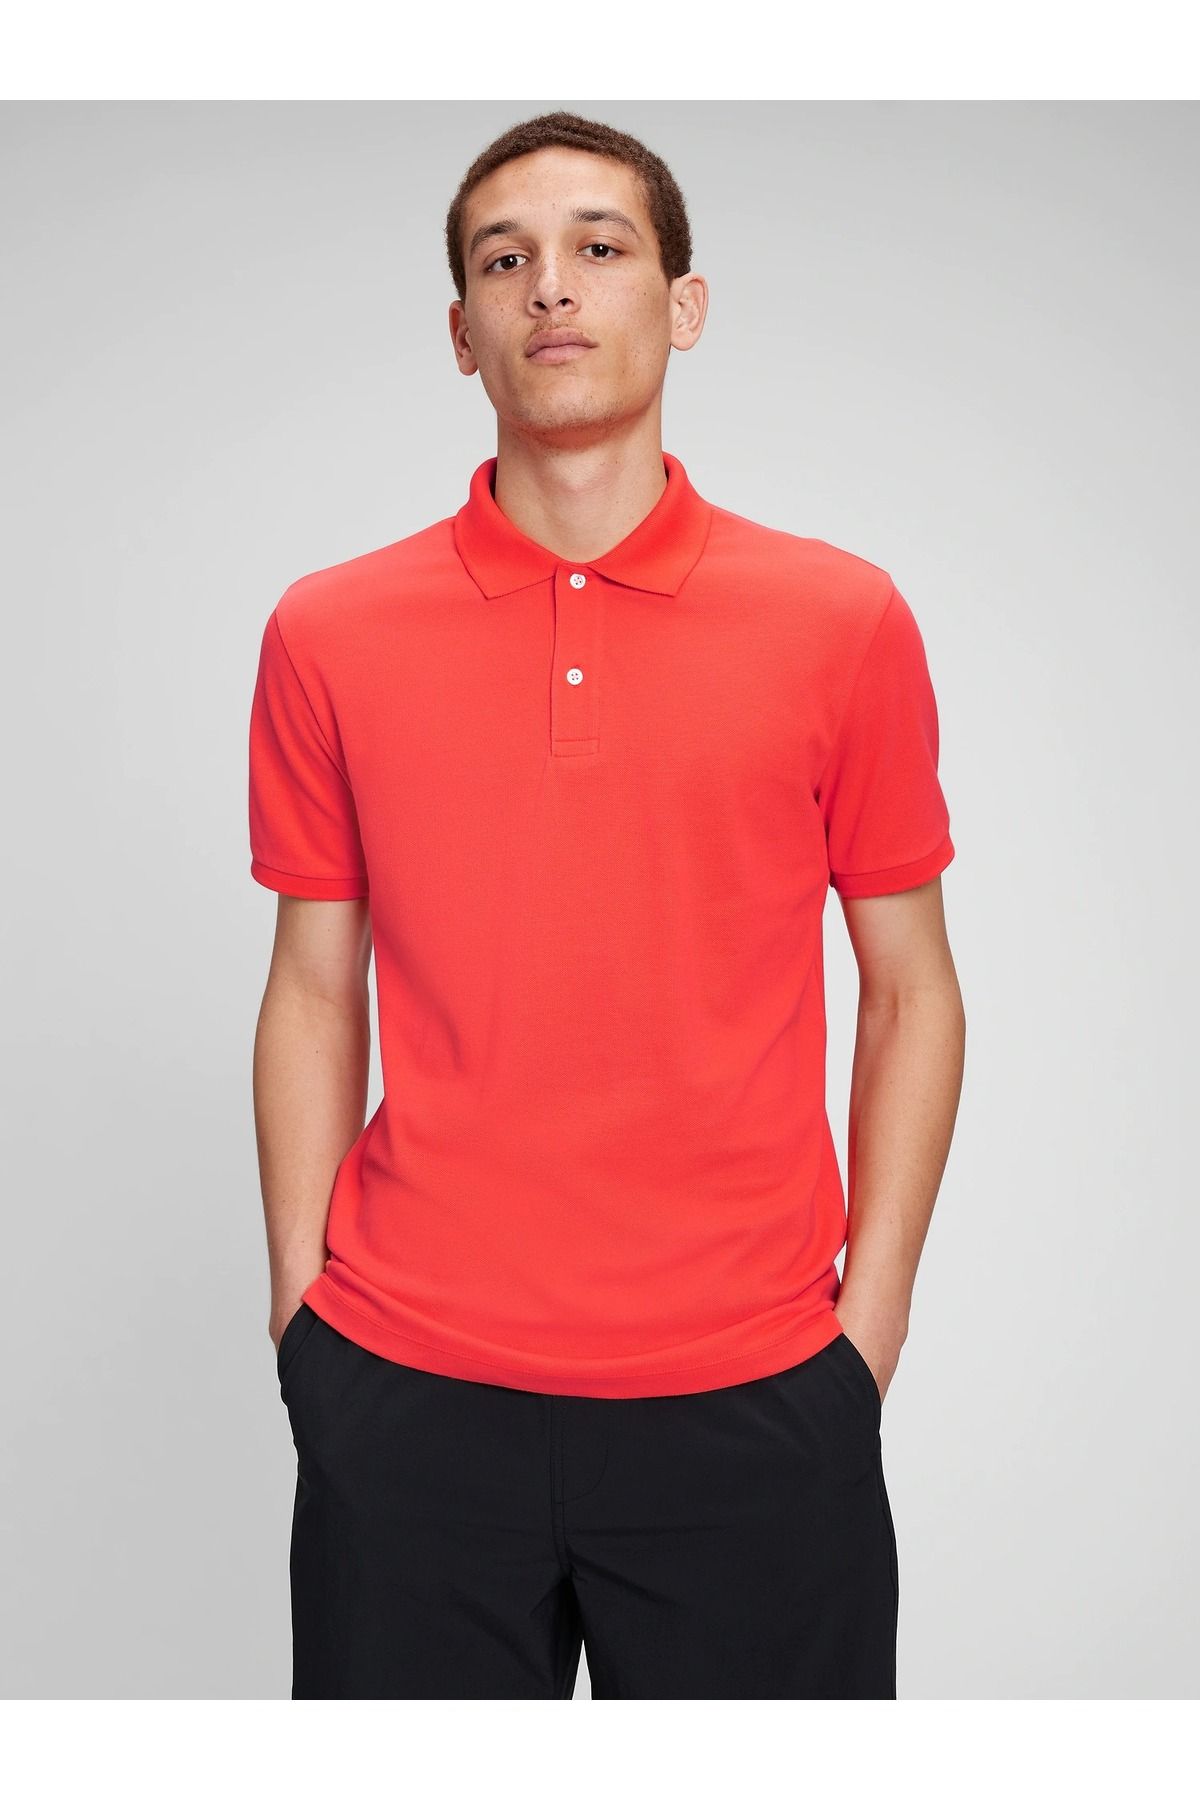 GAP Erkek Kırmızı Pique Kısa Kollu Polo T-shirt